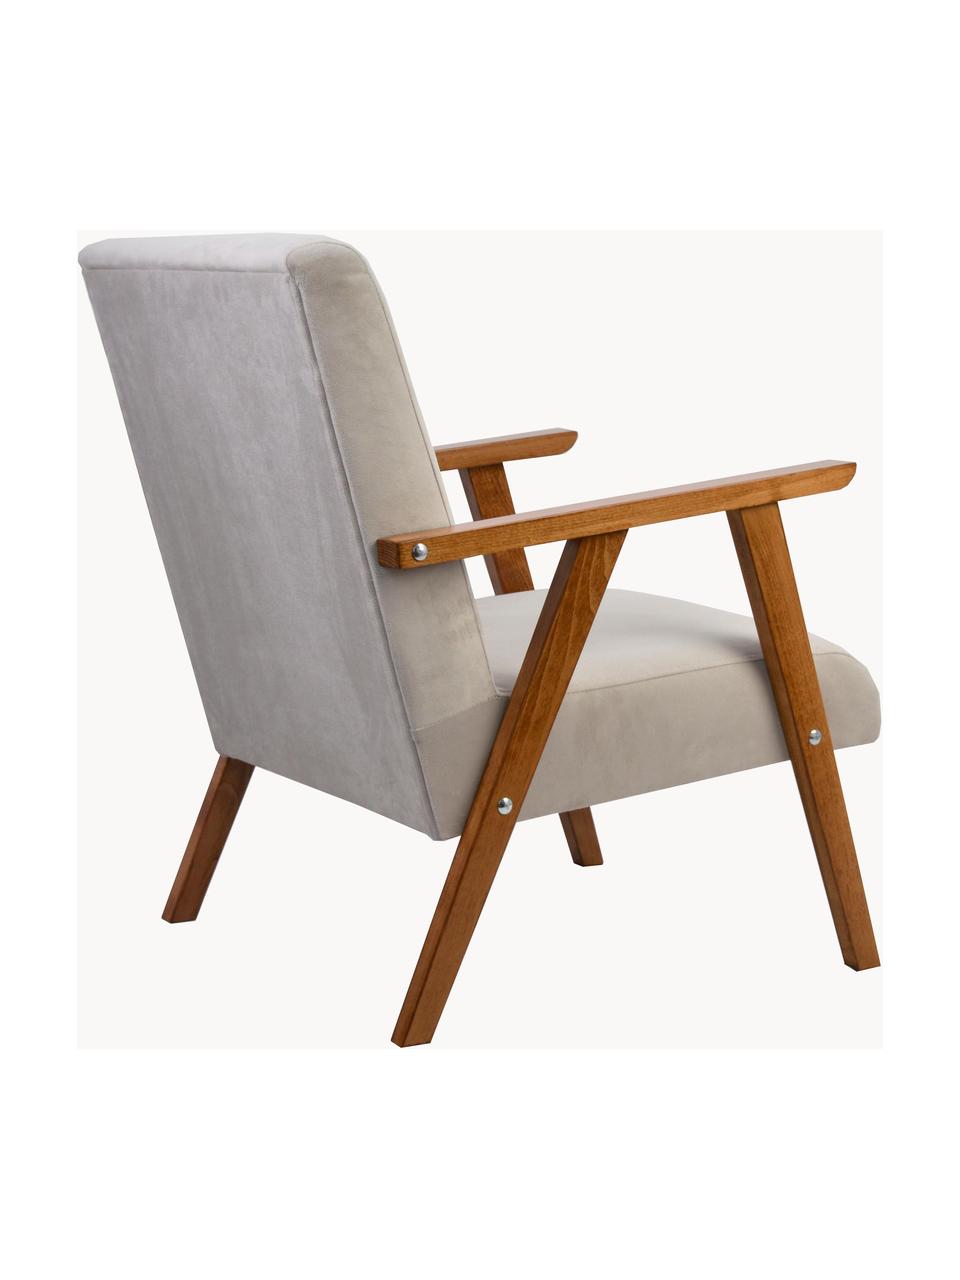 Fotel z aksamitu Victoria, Tapicerka: aksamit (100% poliester), Stelaż: drewno naturalne, Beżowy aksamit, drewno naturalne lakierowane, S 60 x G 69 cm